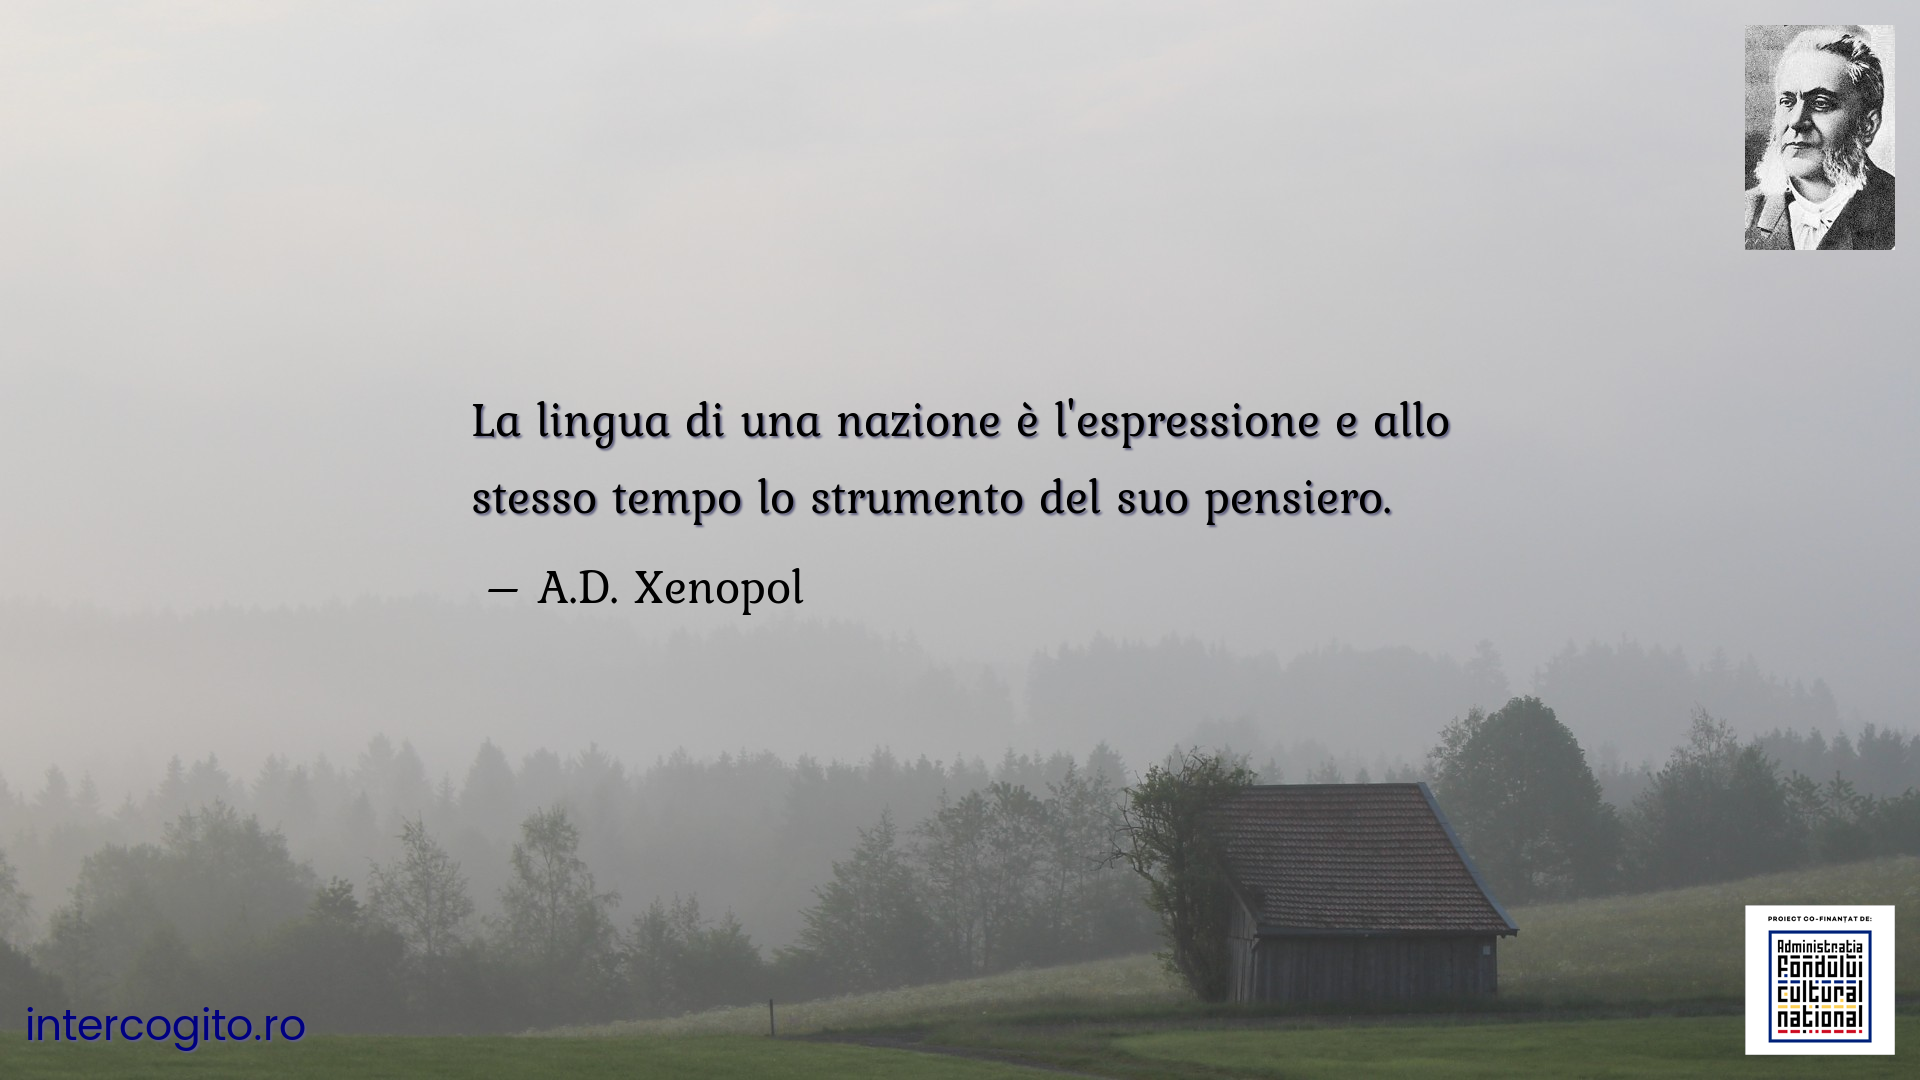 La lingua di una nazione è l'espressione e allo stesso tempo lo strumento del suo pensiero.